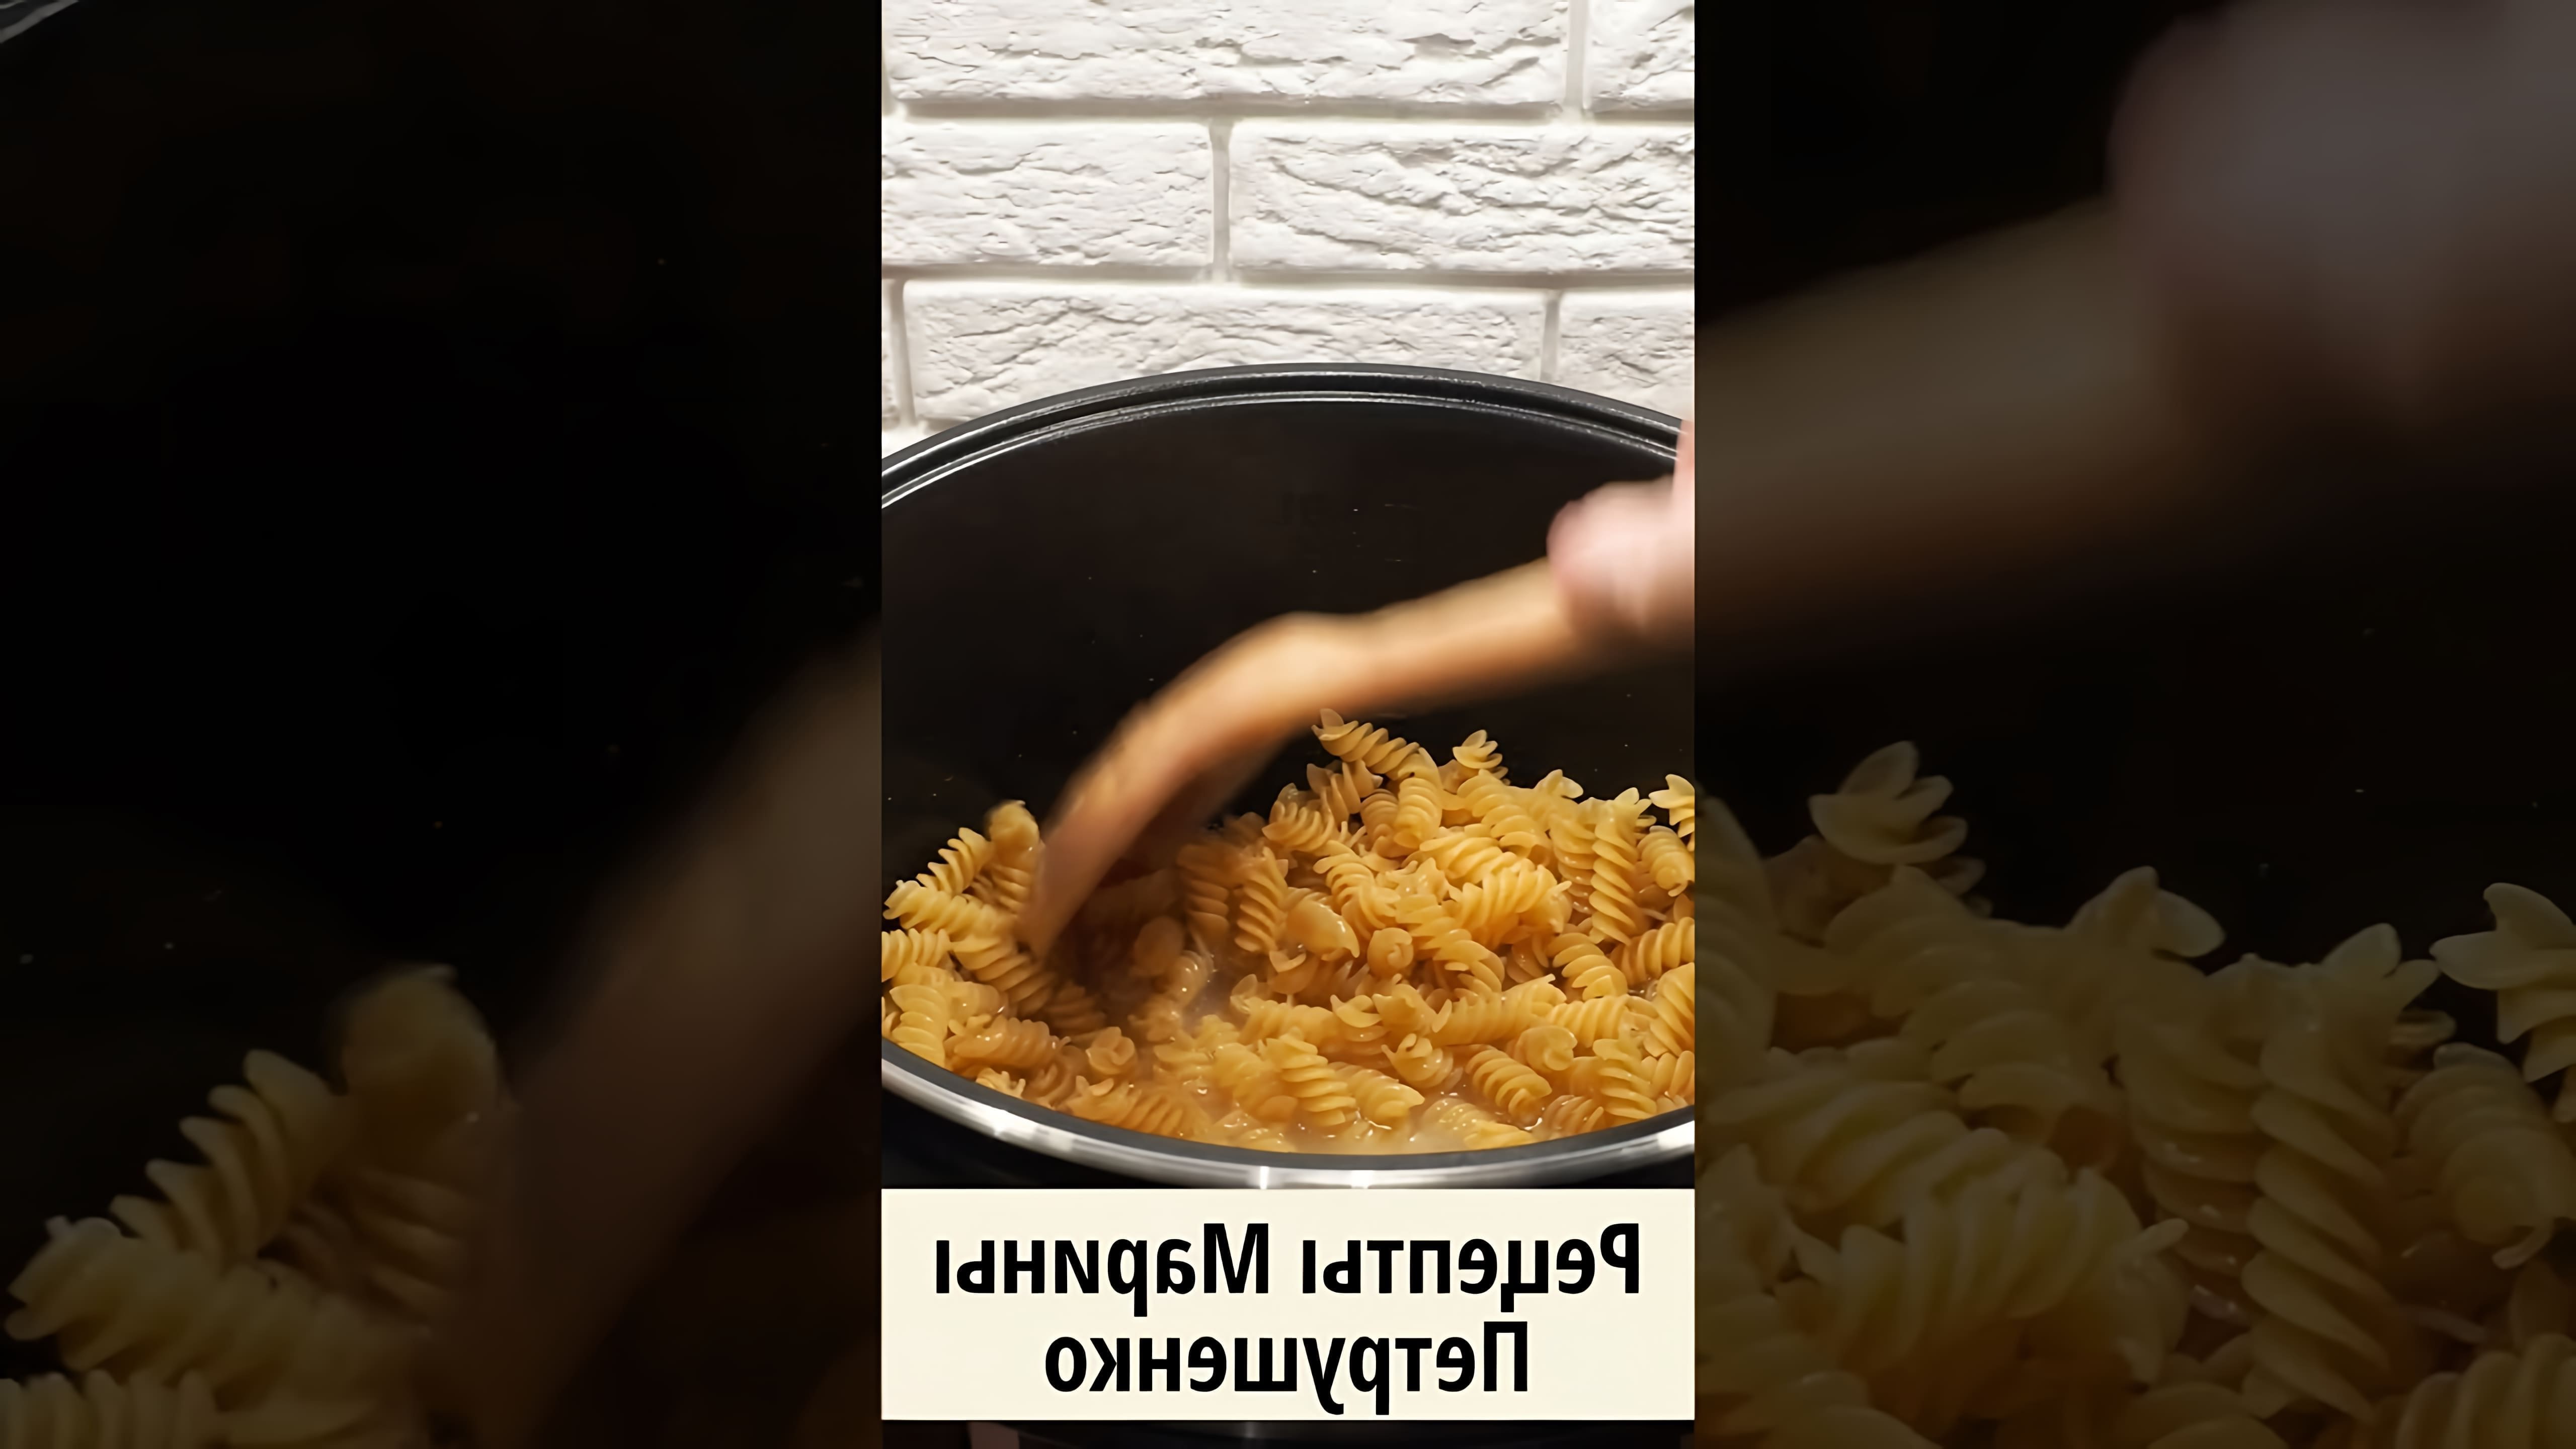 В этом видео демонстрируется простой и быстрый способ приготовления макарон в мультиварке